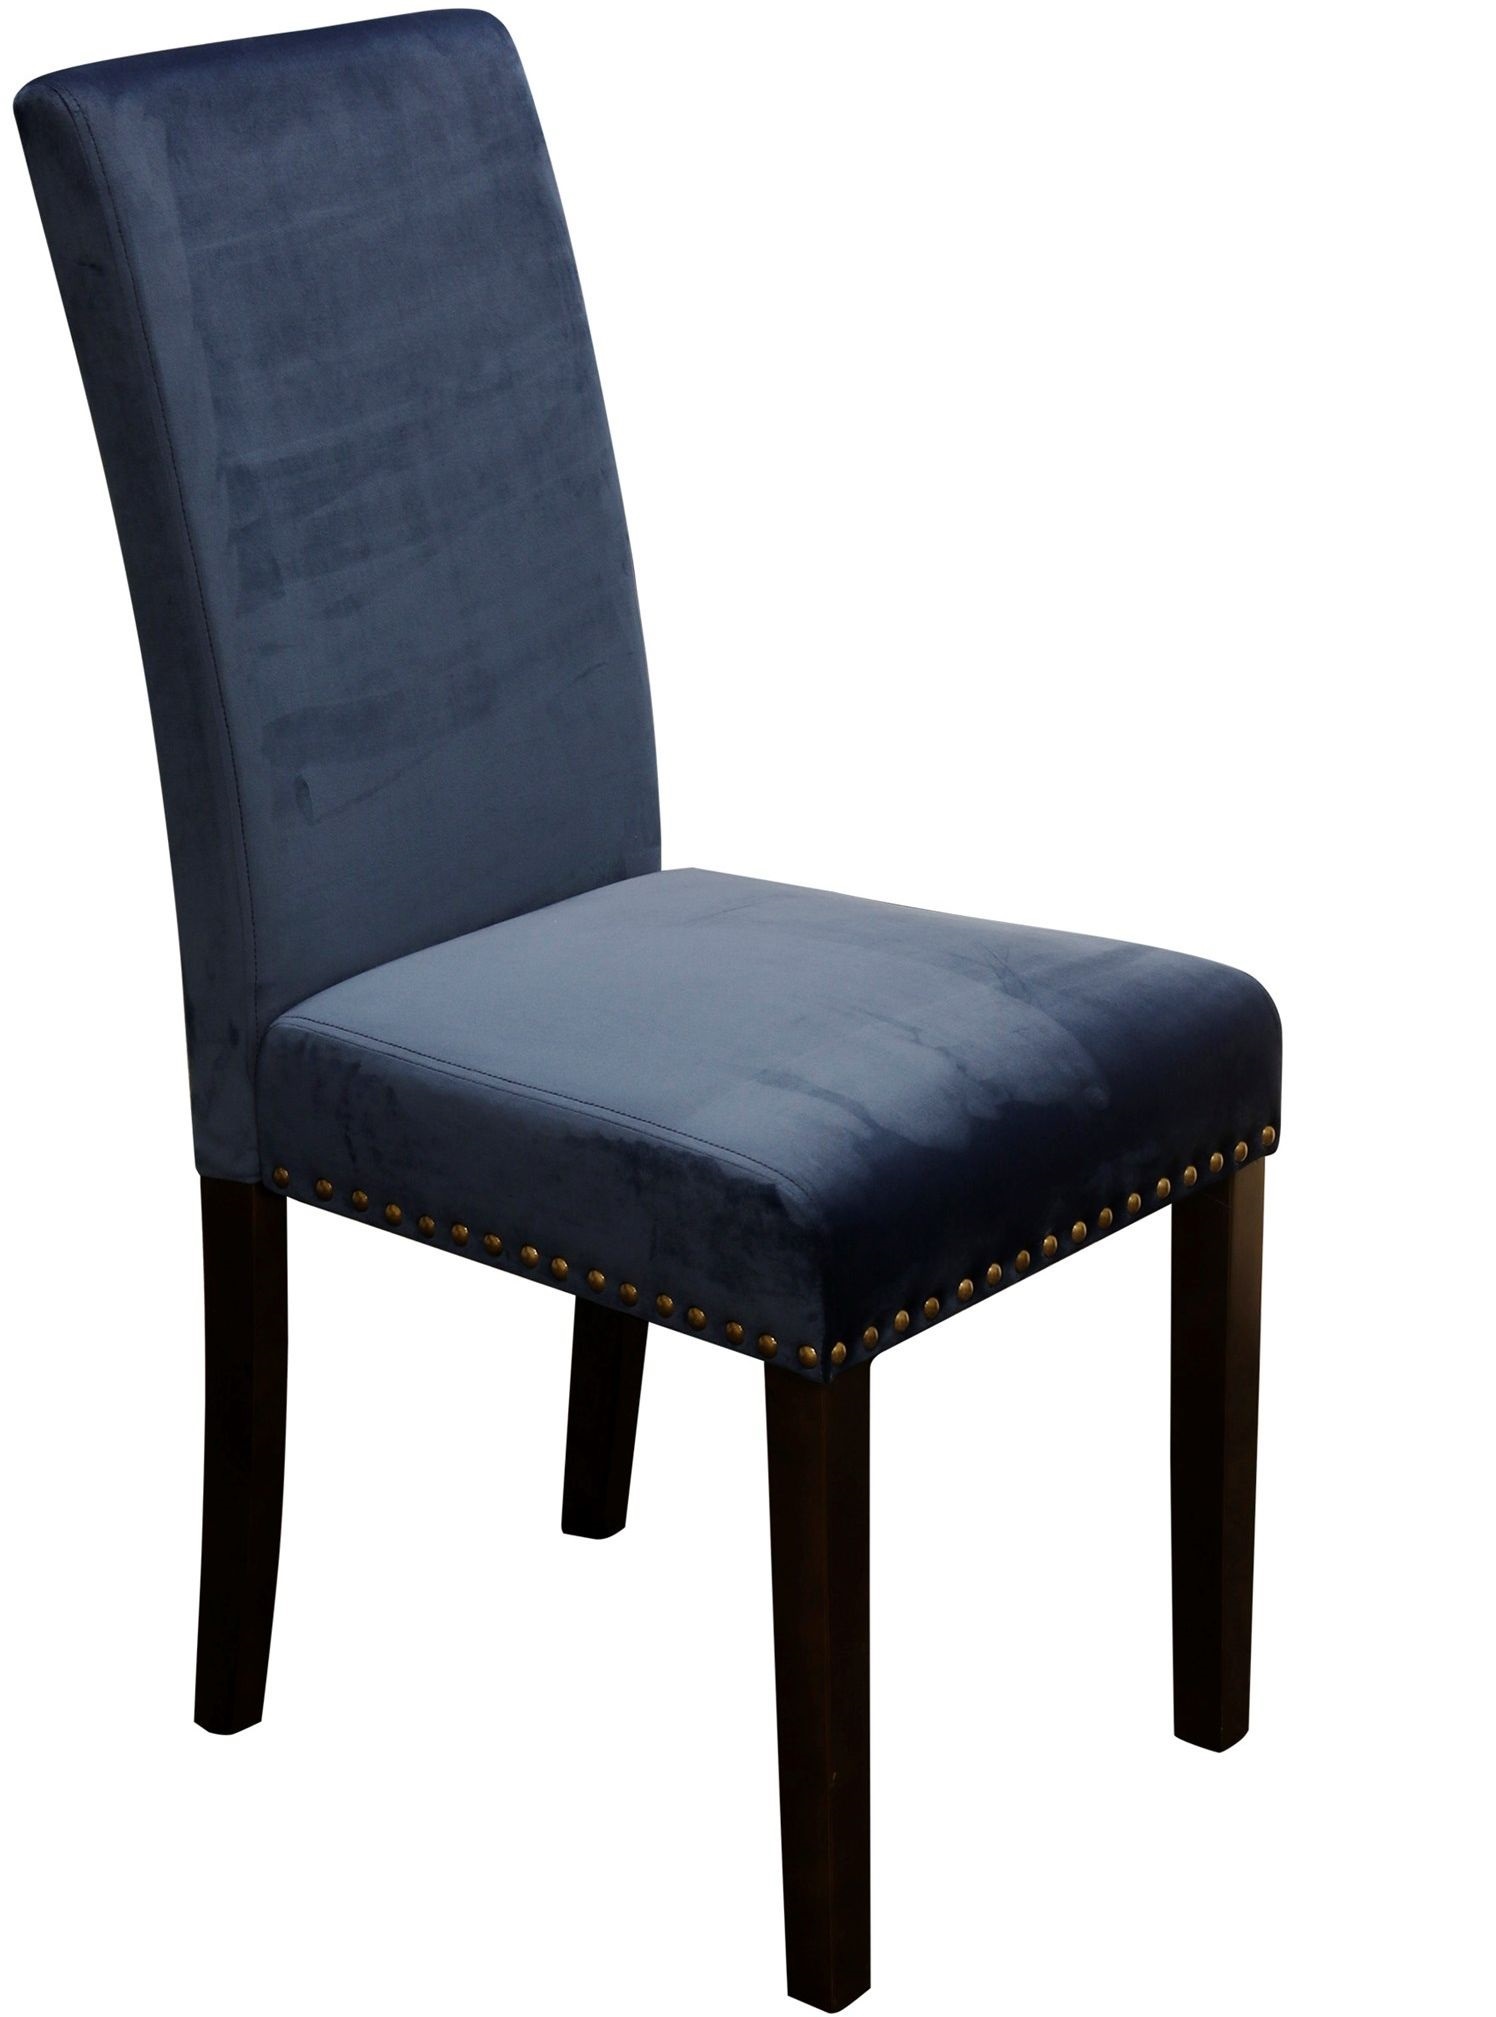 StyleCraft Parson Dining Chair